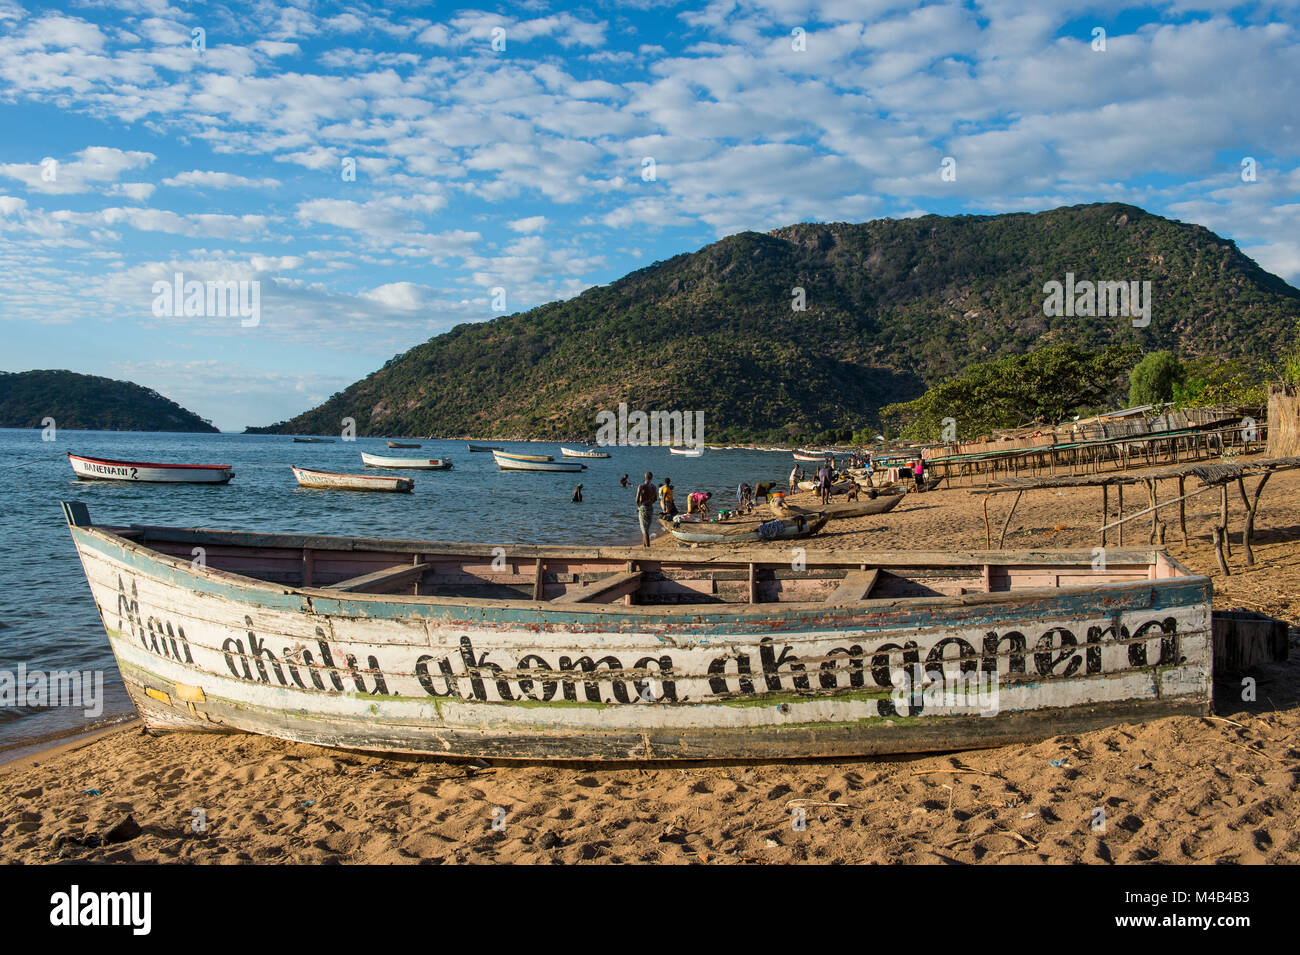 Bateaux de pêche sur une plage, le lac Malawi,Cape Maclear,Malawi,Afrique Banque D'Images